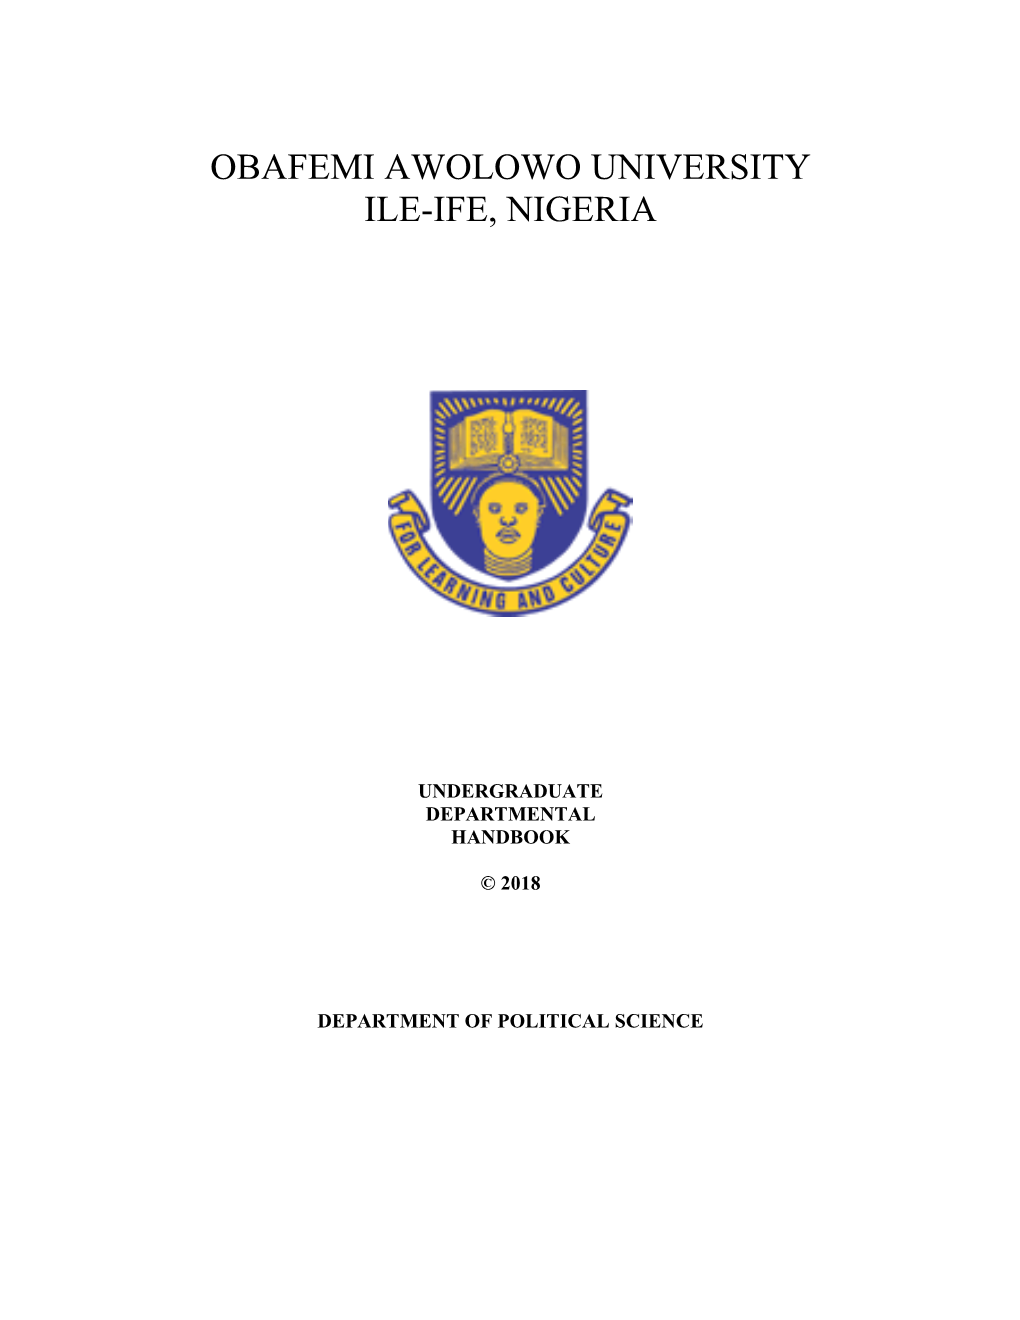 Obafemi Awolowo University Ile-Ife, Nigeria